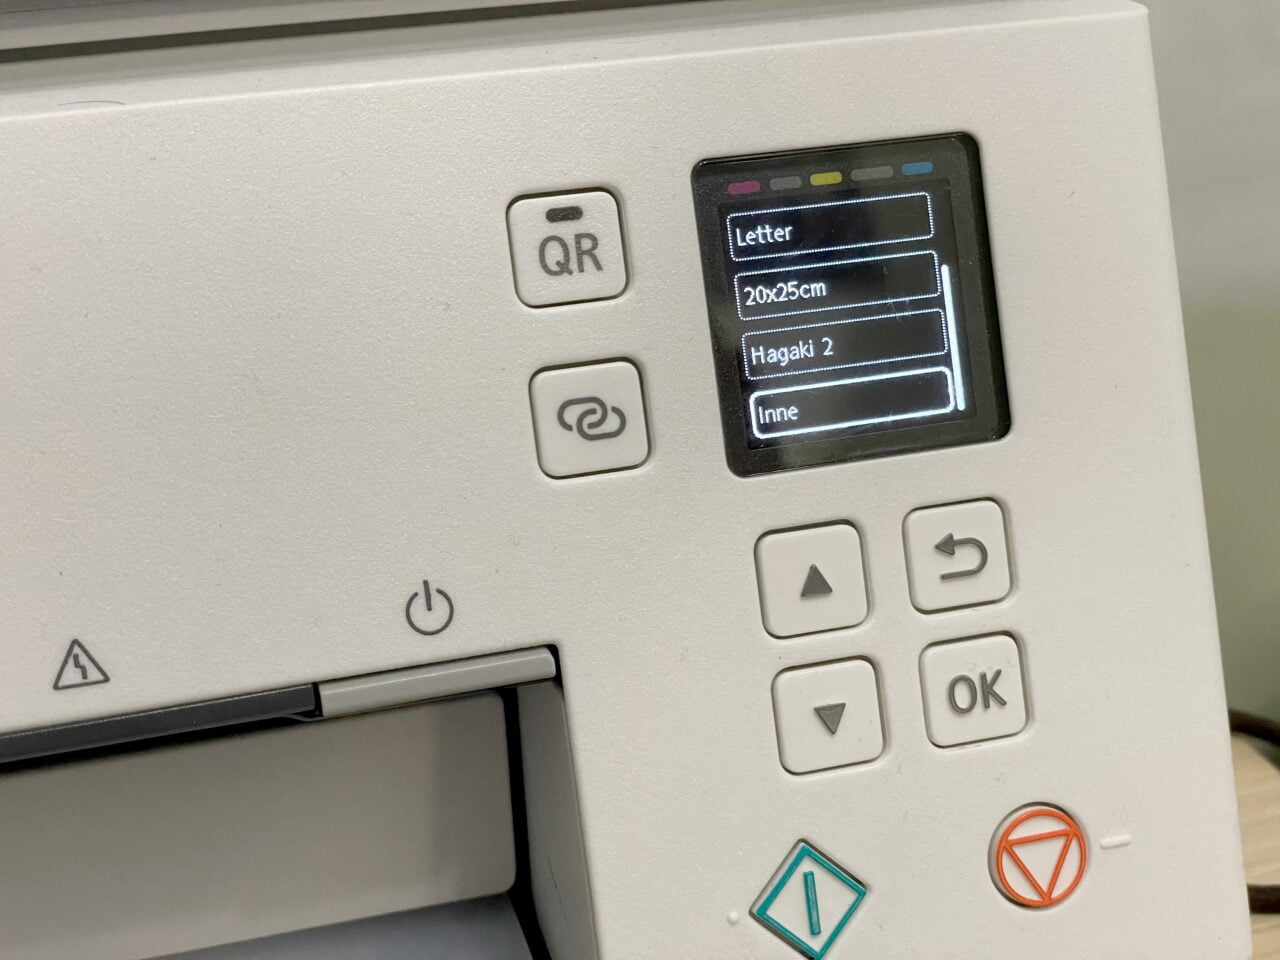 Panel sterowania drukarki z ekranem dotykowym wyświetlającym opcje formatów papieru i przyciski nawigacyjne.